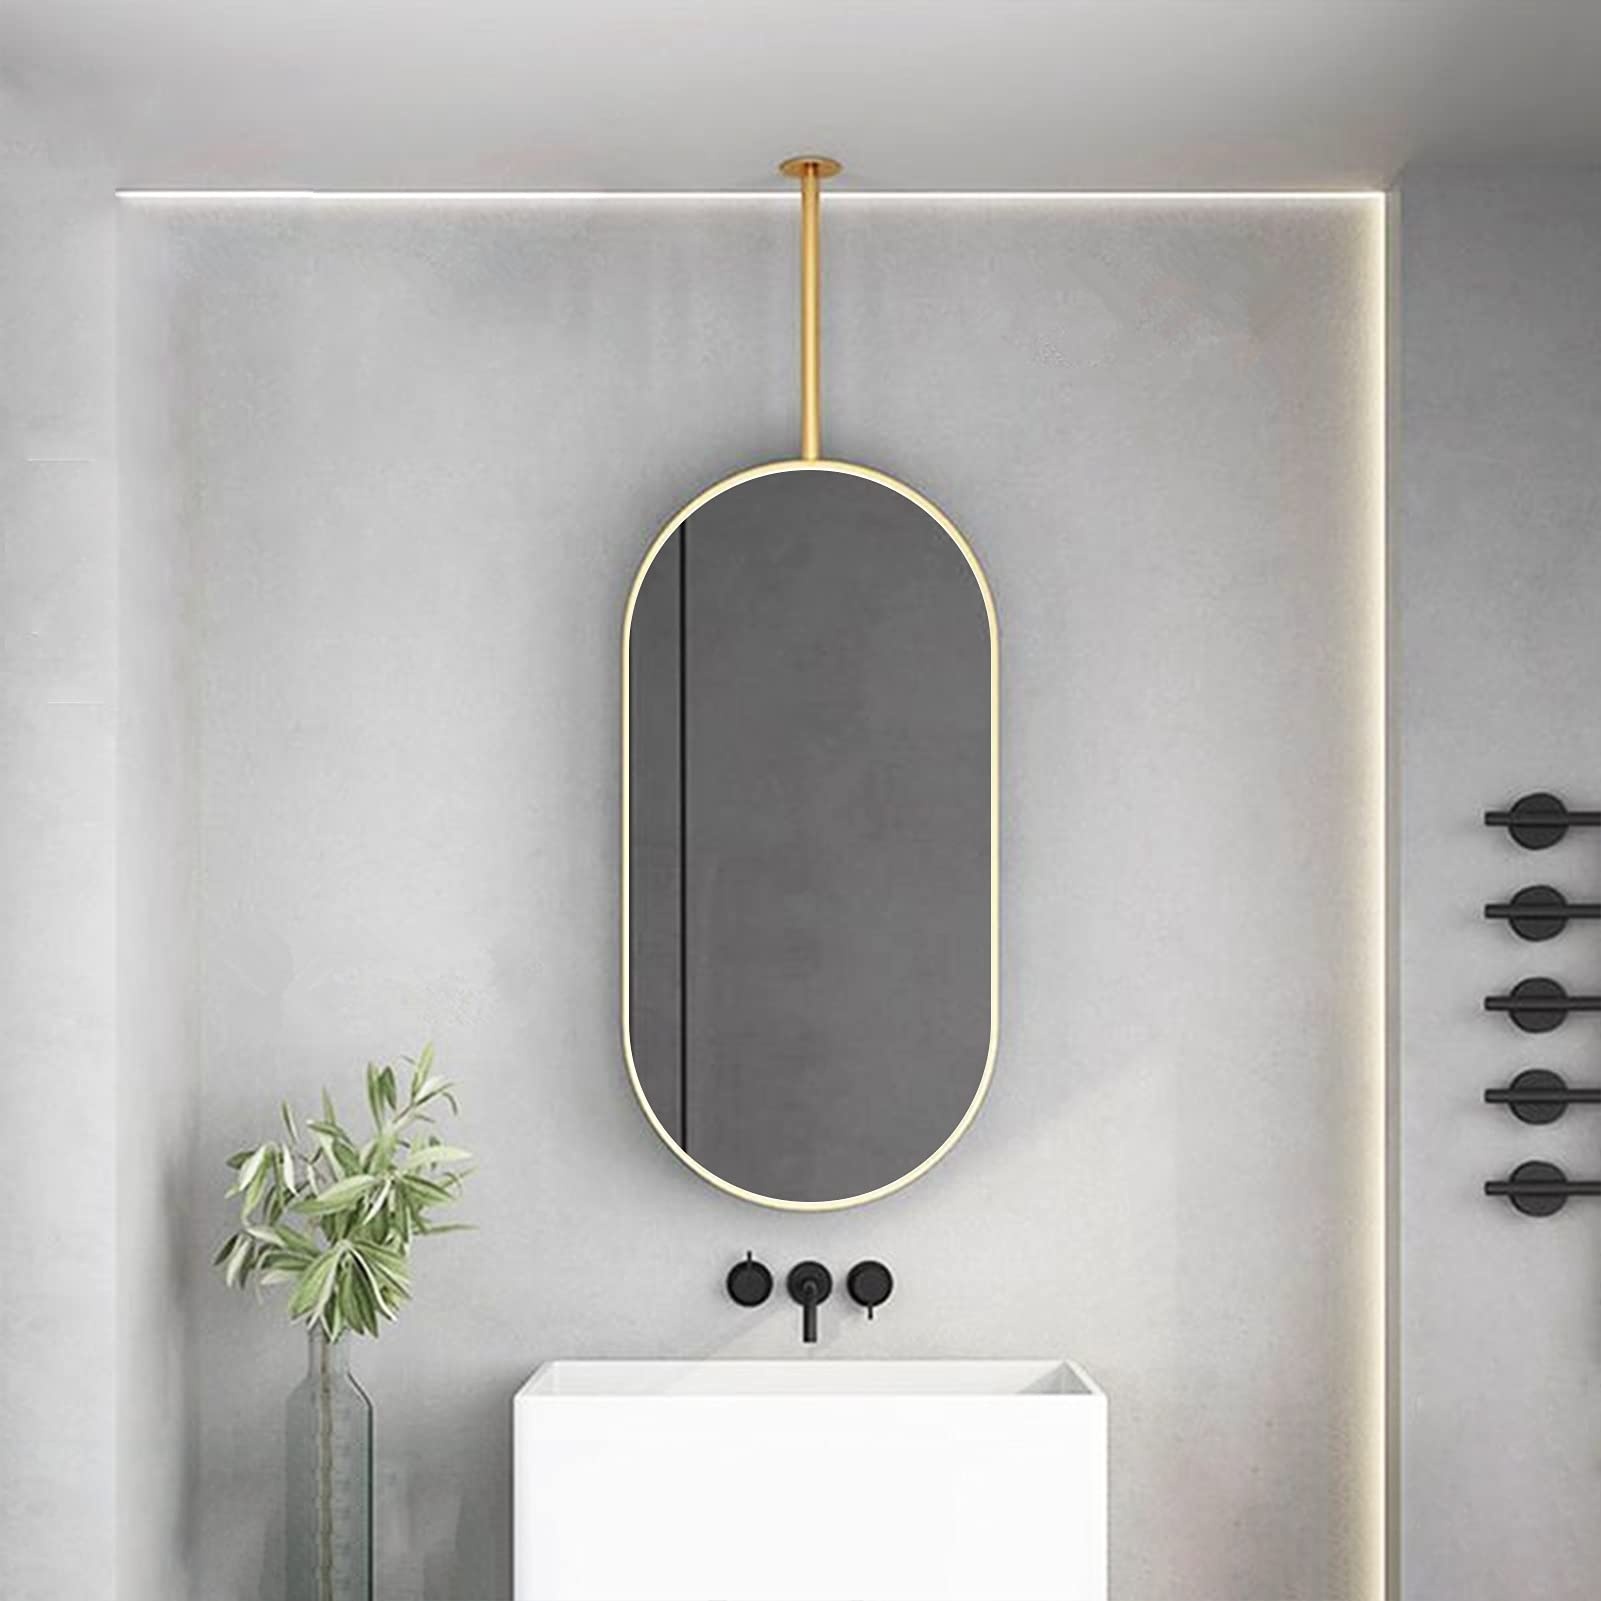 Nordic Gold Oval Spiegel für Deckenbehang - mit Metallrahmen und Boom Floating Badezimmerspiegel, Vanity Makeup Mirror Kreativer dekorativer Spiegel für Zuhause oder Hotel ( Size : 50cmx70cm )